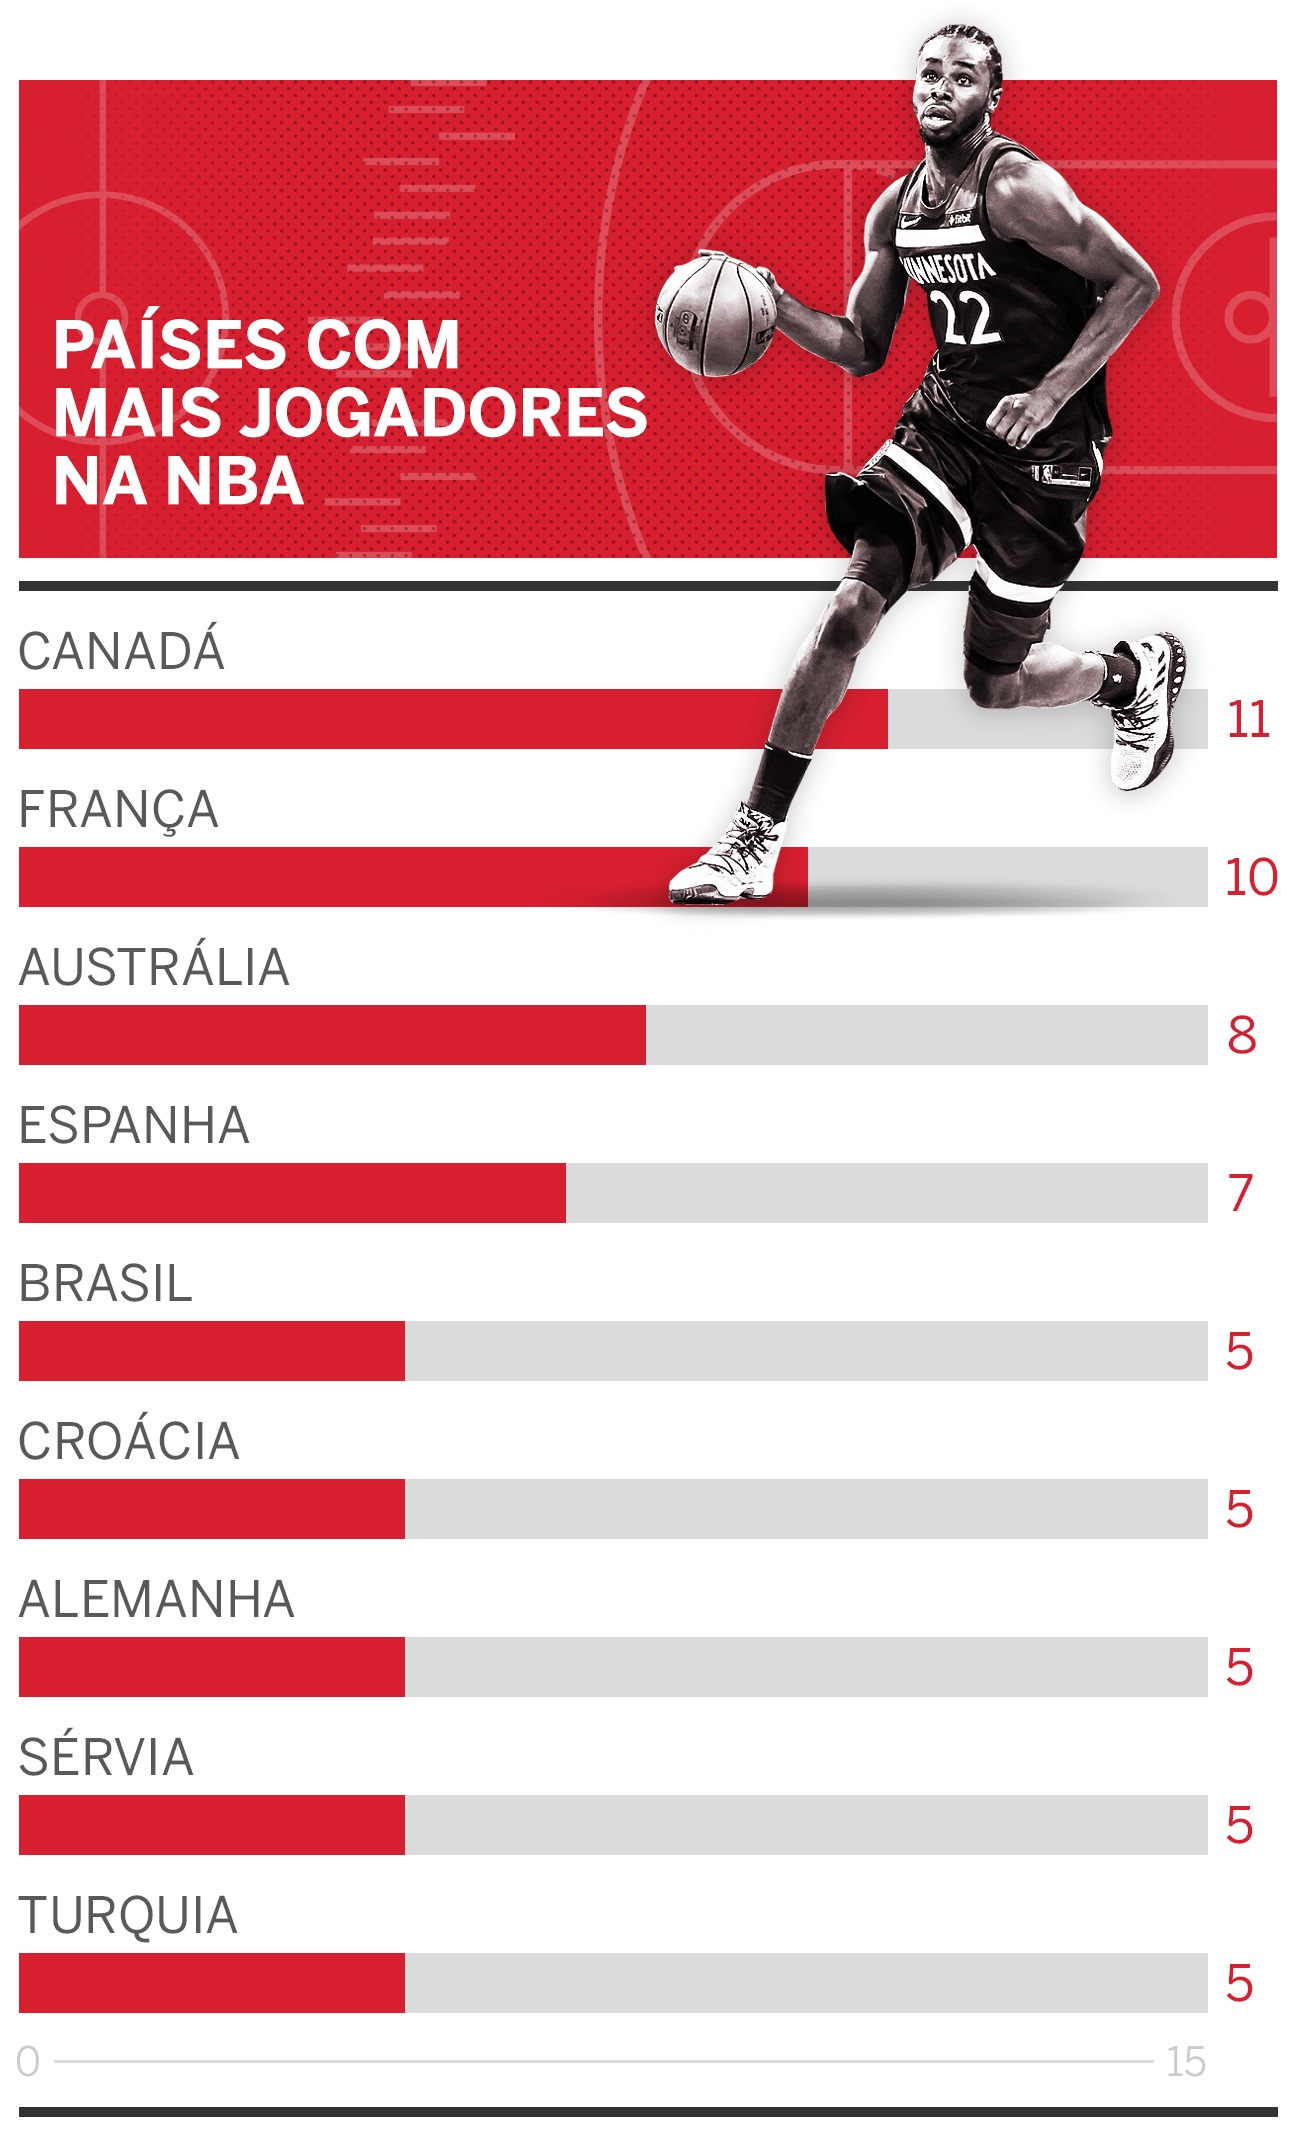 Os estrangeiros estão tomando conta da NBA?